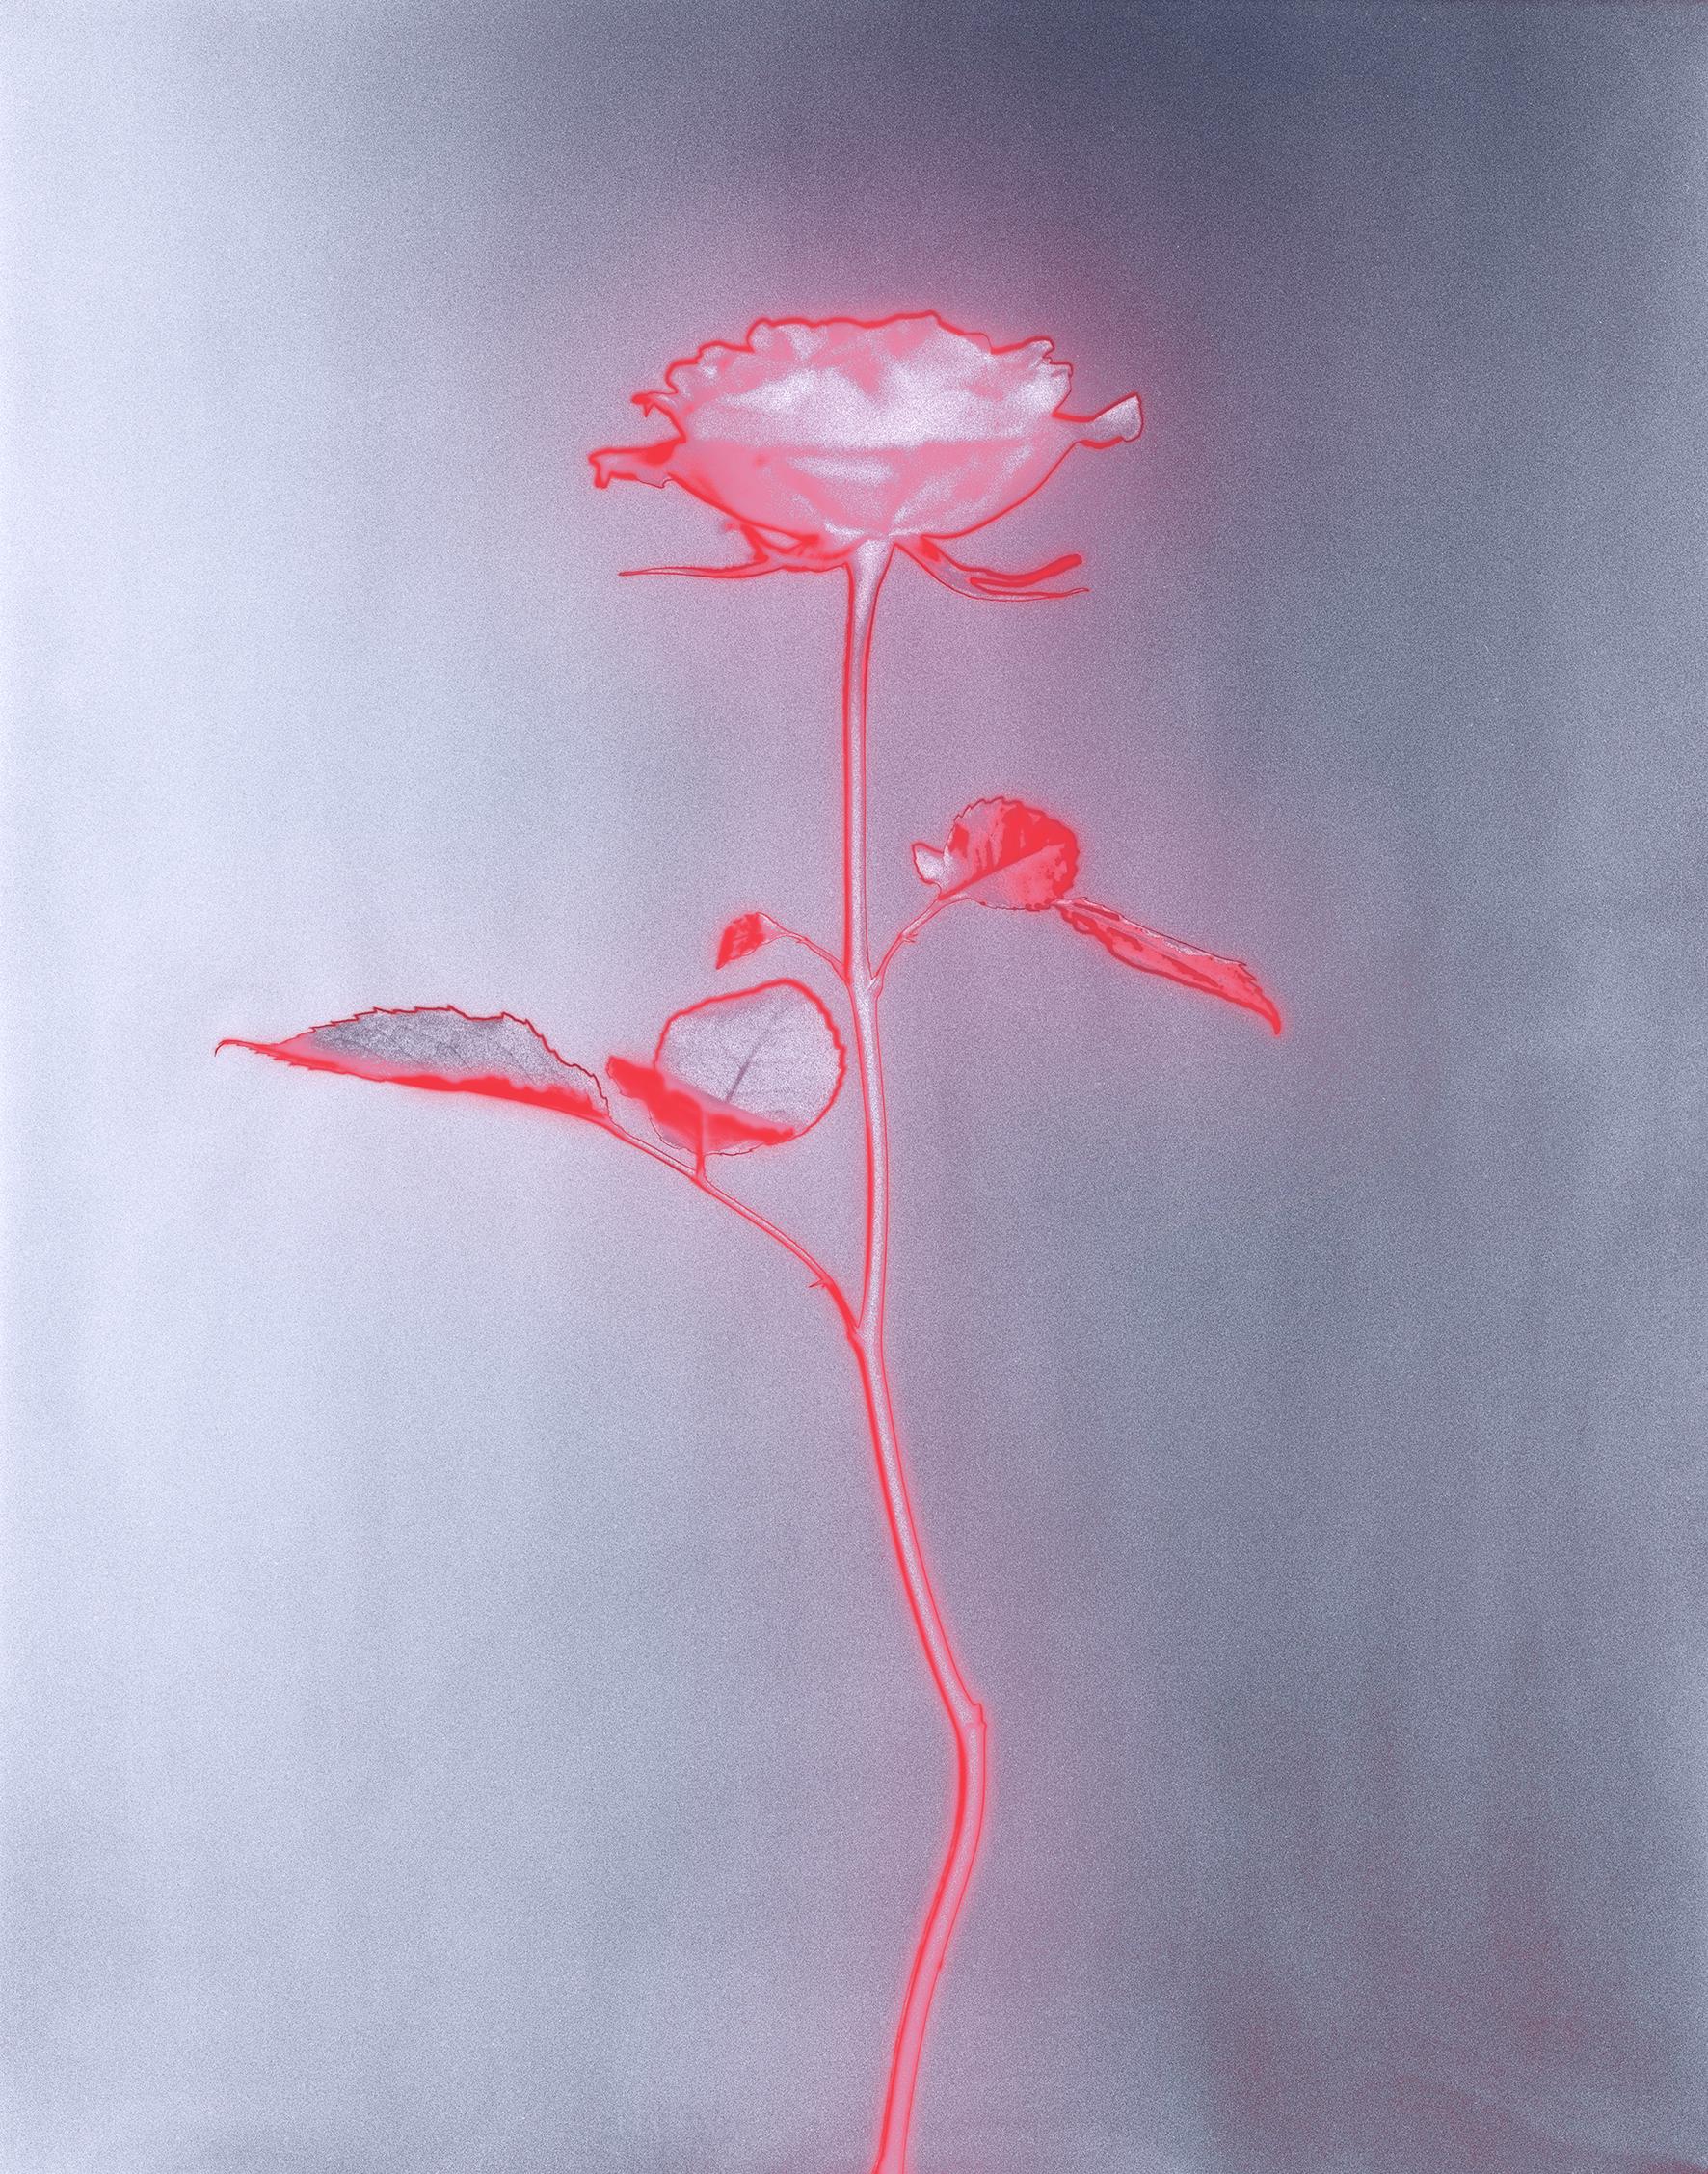 „Rose glow“ eine analoge Stillleben-Fotografie, zeitgenössische Mischtechnik, rosa/rot